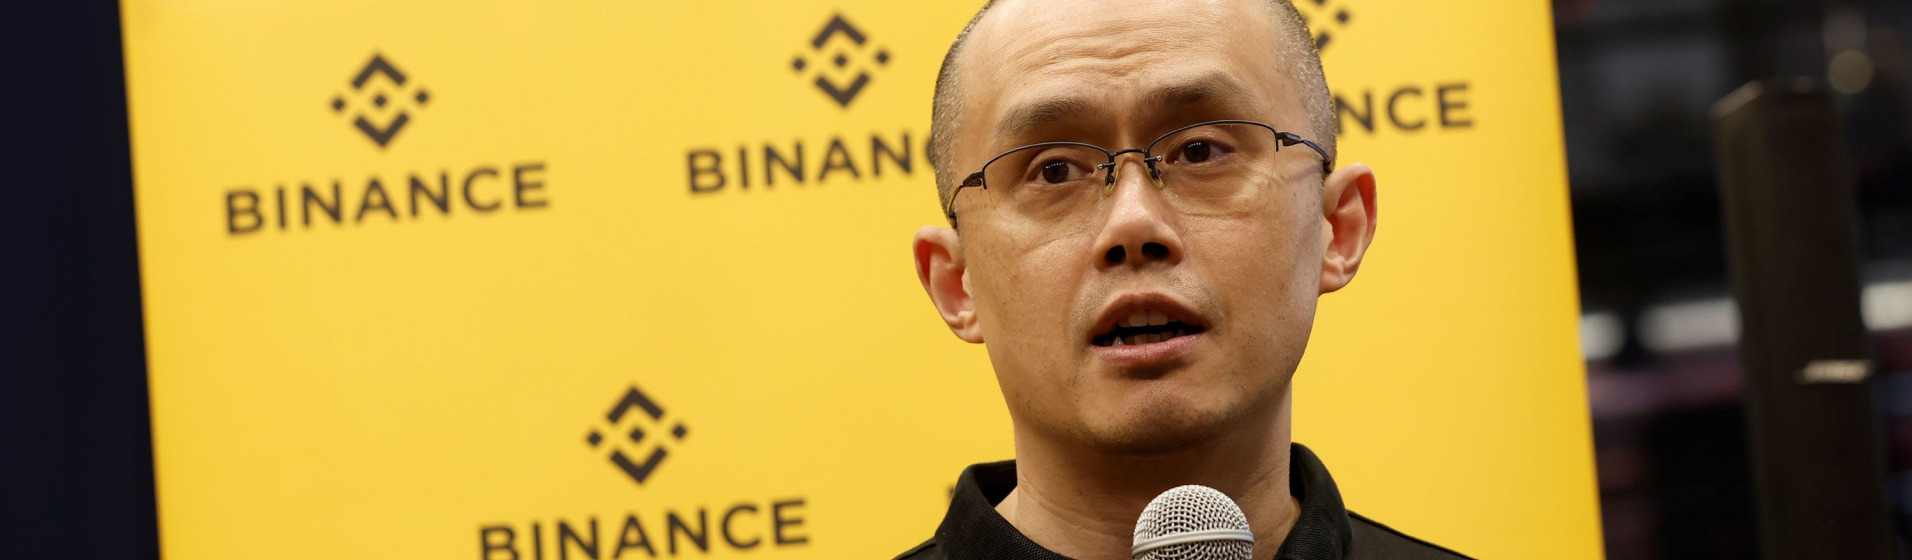 Binance CEO Changpeng Zhao Pleads Guilty